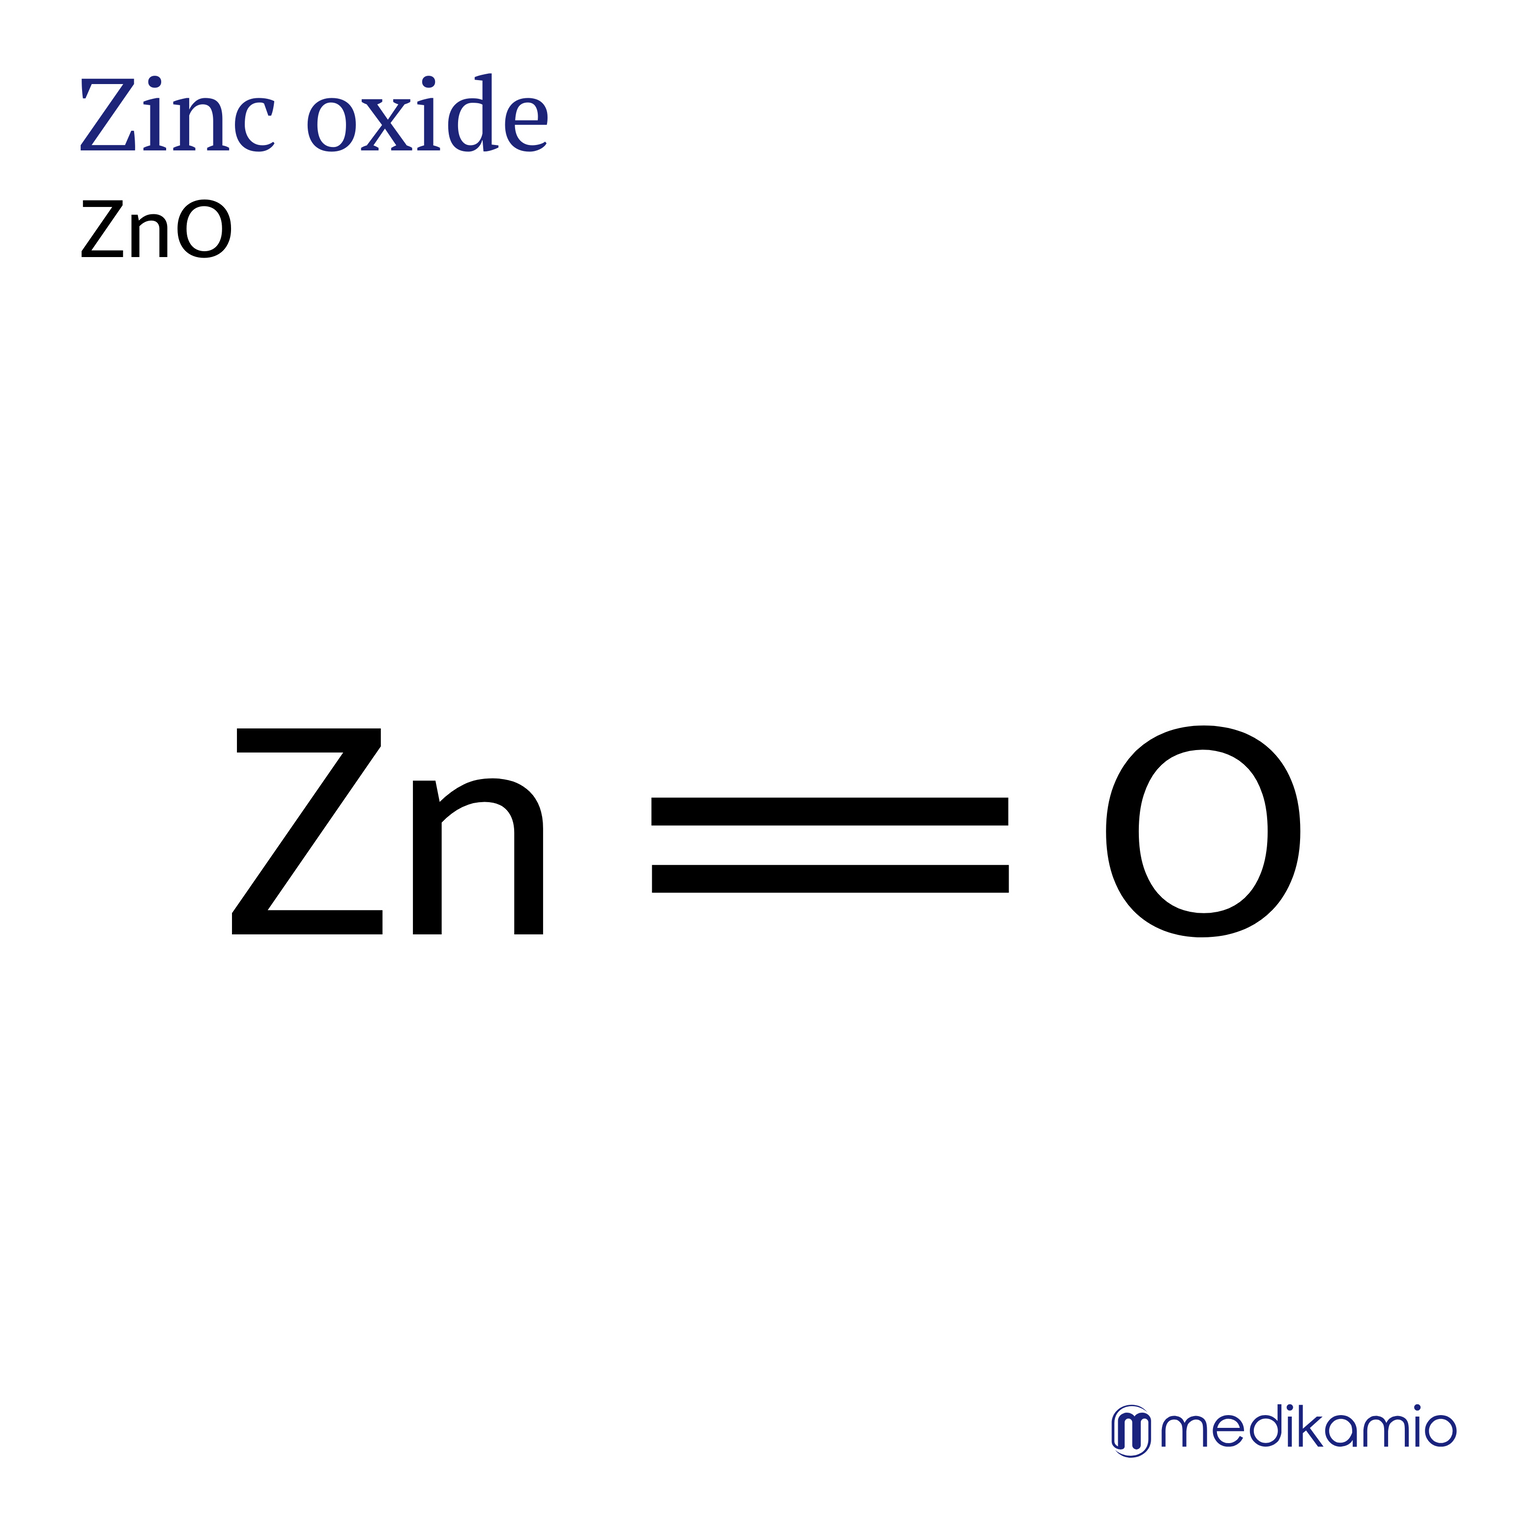 Fórmula estructural gráfica del principio activo óxido de zinc